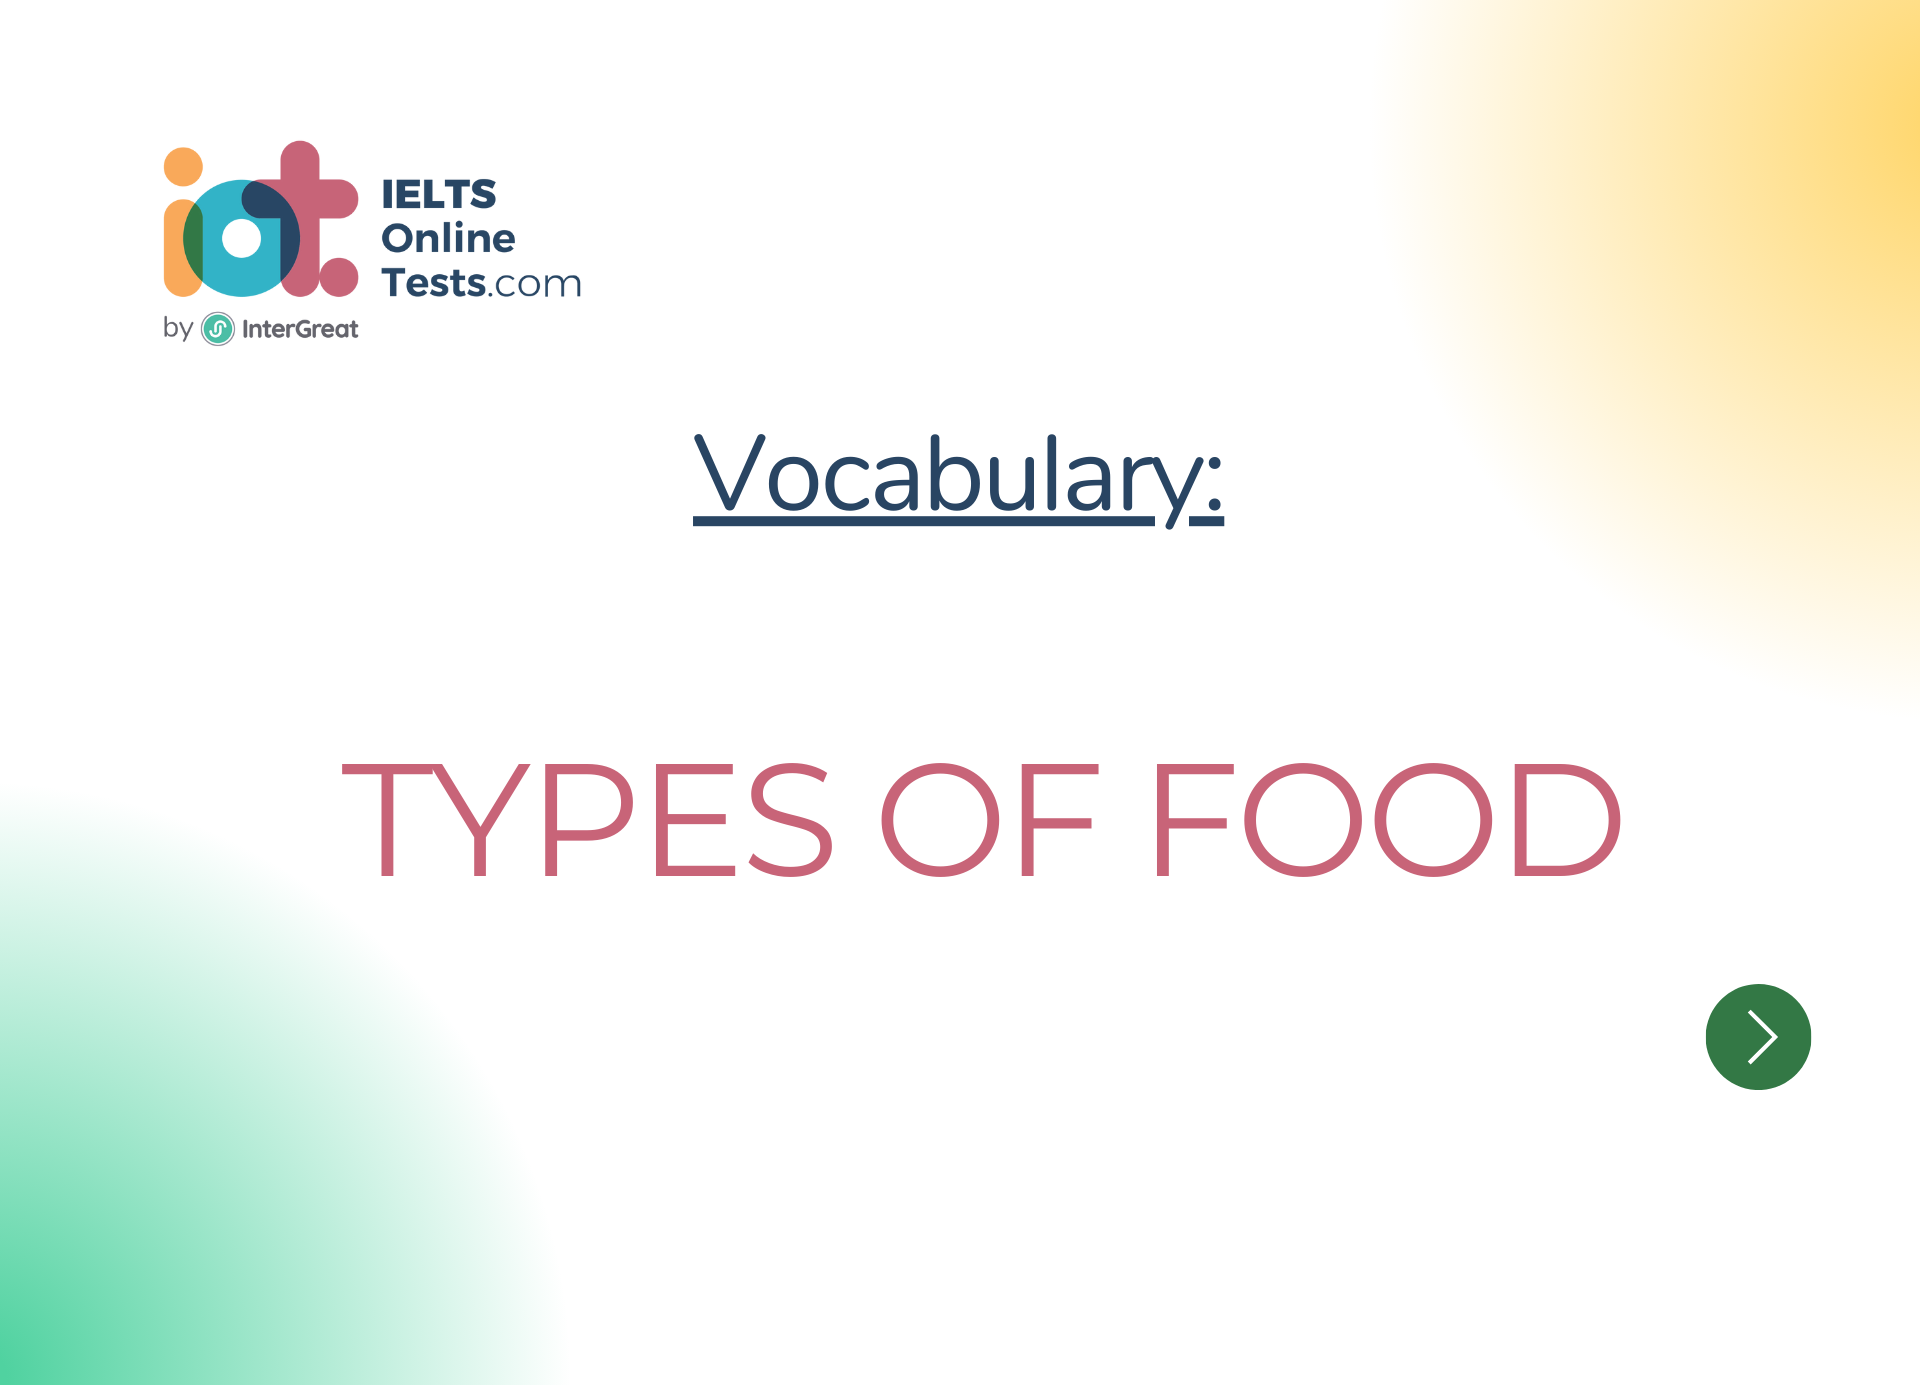 Các loại thực phẩm (Types of food)